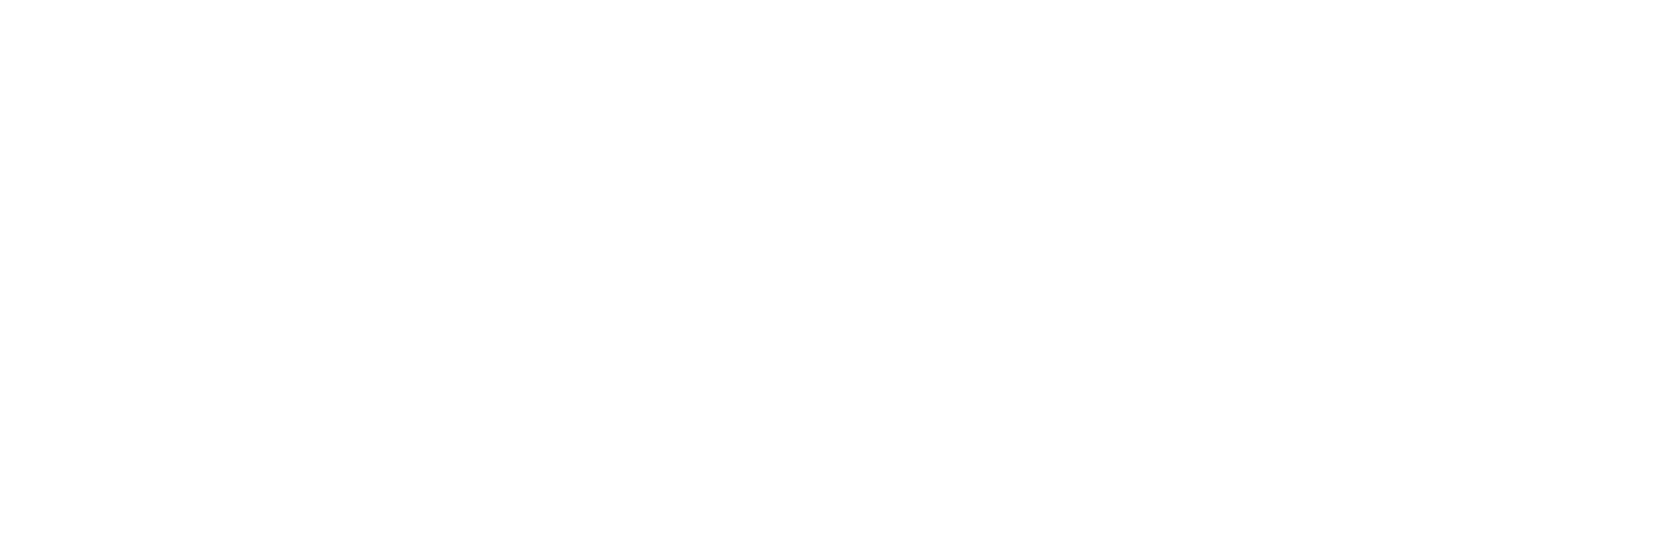 Gaztransport & Technigaz Logo für dunkle Hintergründe (transparentes PNG)